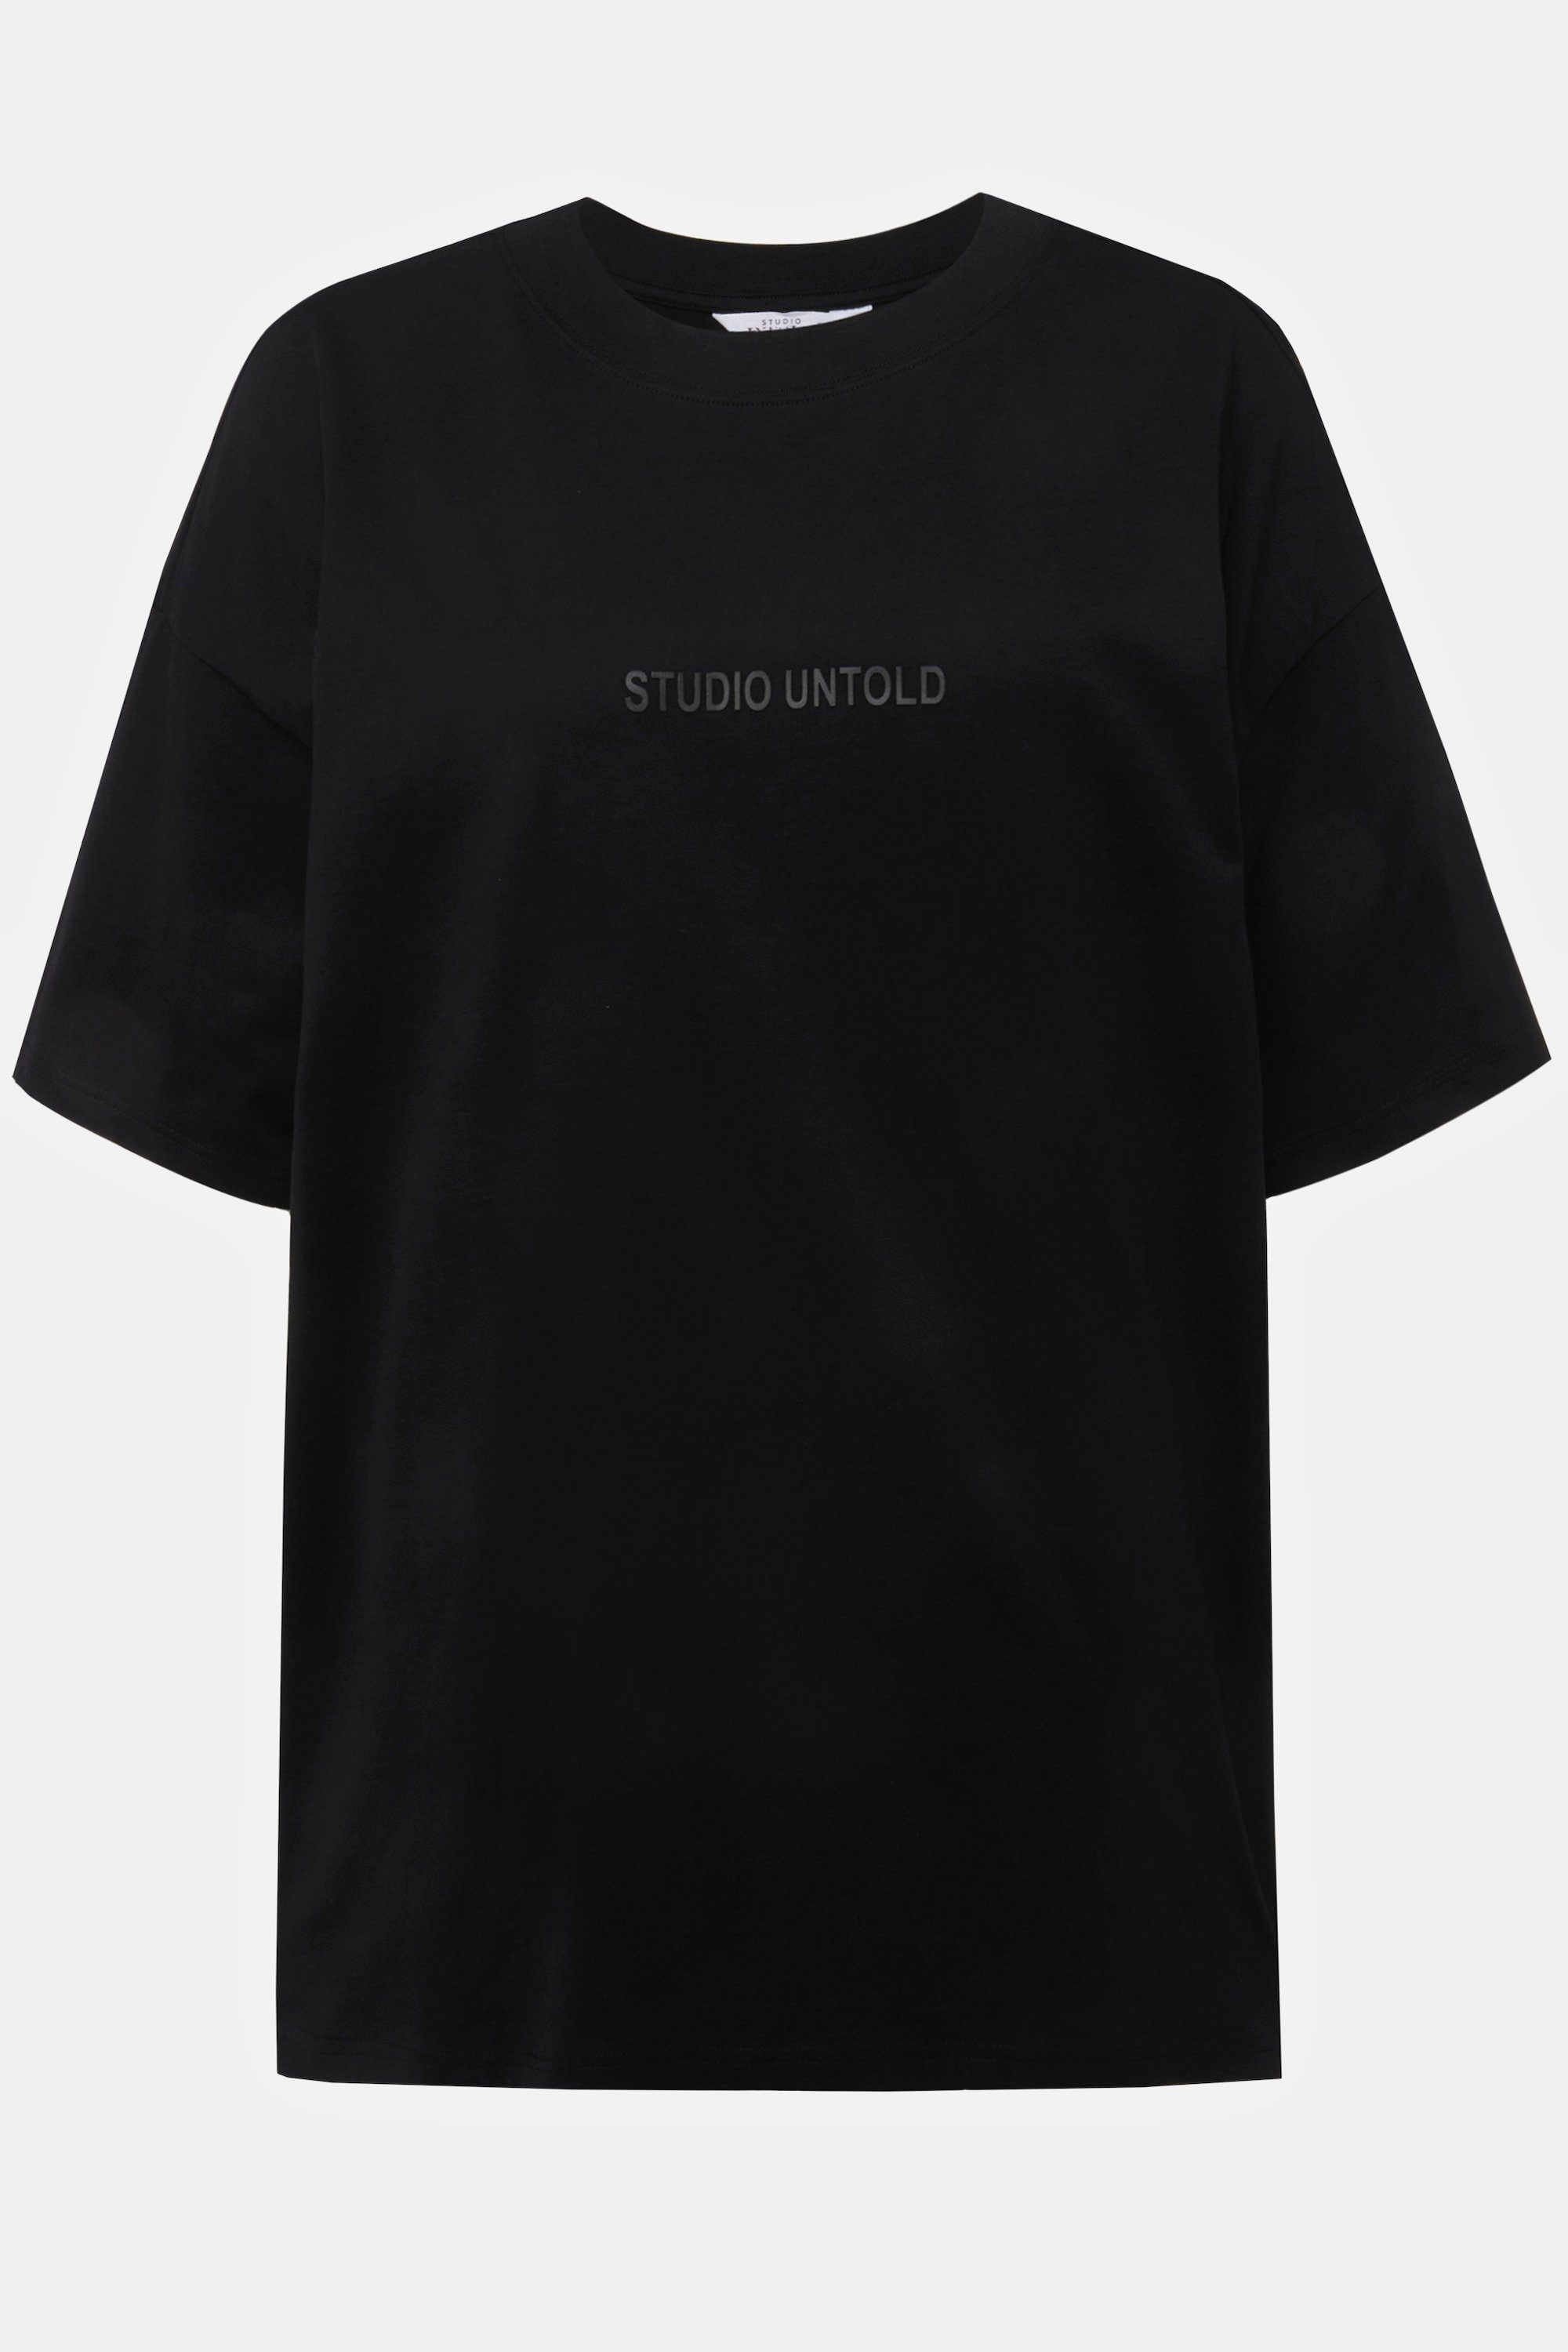 Untold Untold schwarz T-Shirt Studio Studio Rundhalsshirt oversized Halbarm Rundhals